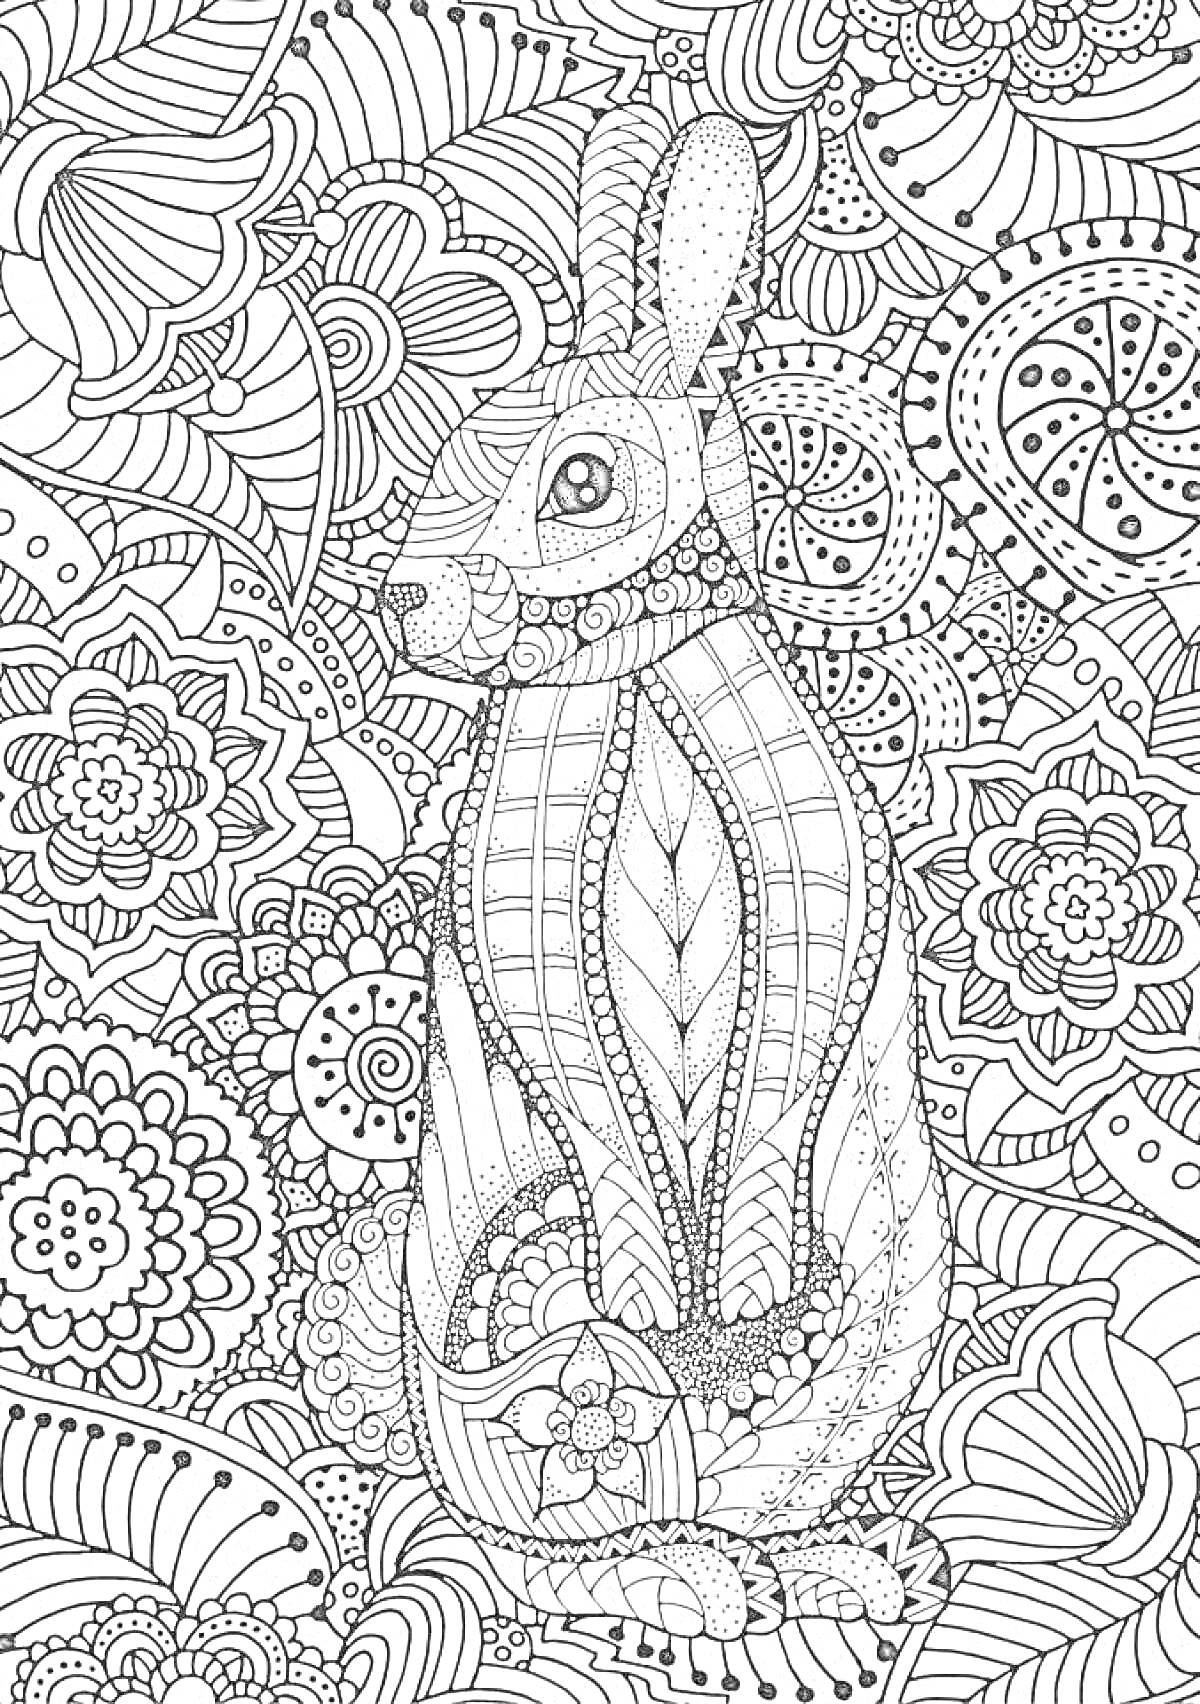 На раскраске изображено: Антистресс, Кролик, Цветы, Узоры, Творчество, Медитация, Арт-терапия